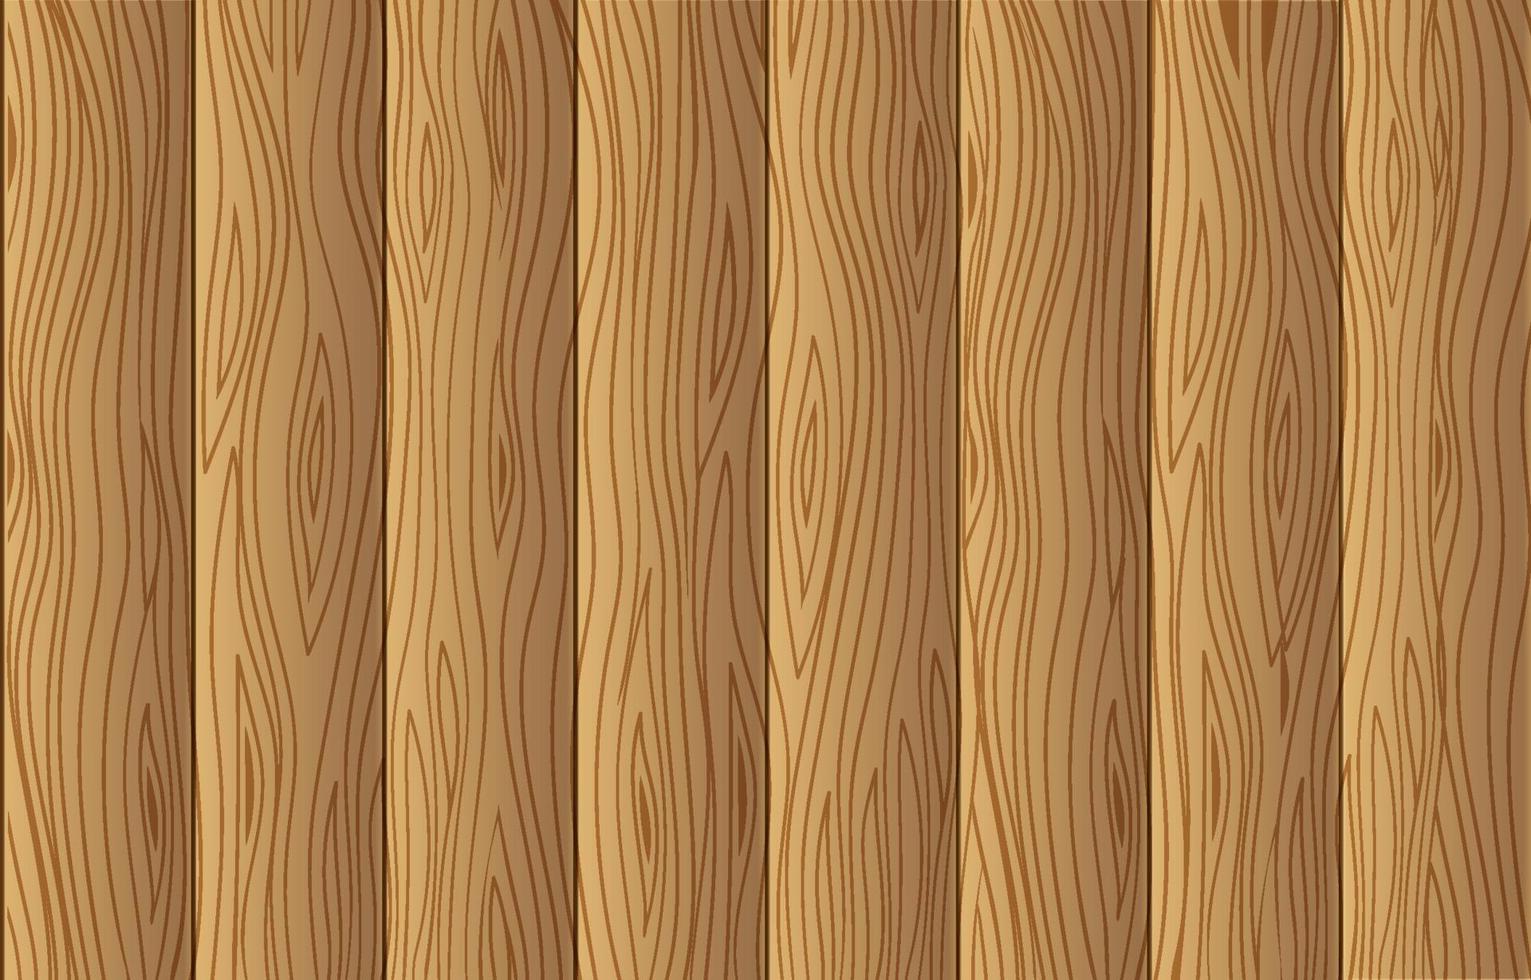 wood Background Textures vector